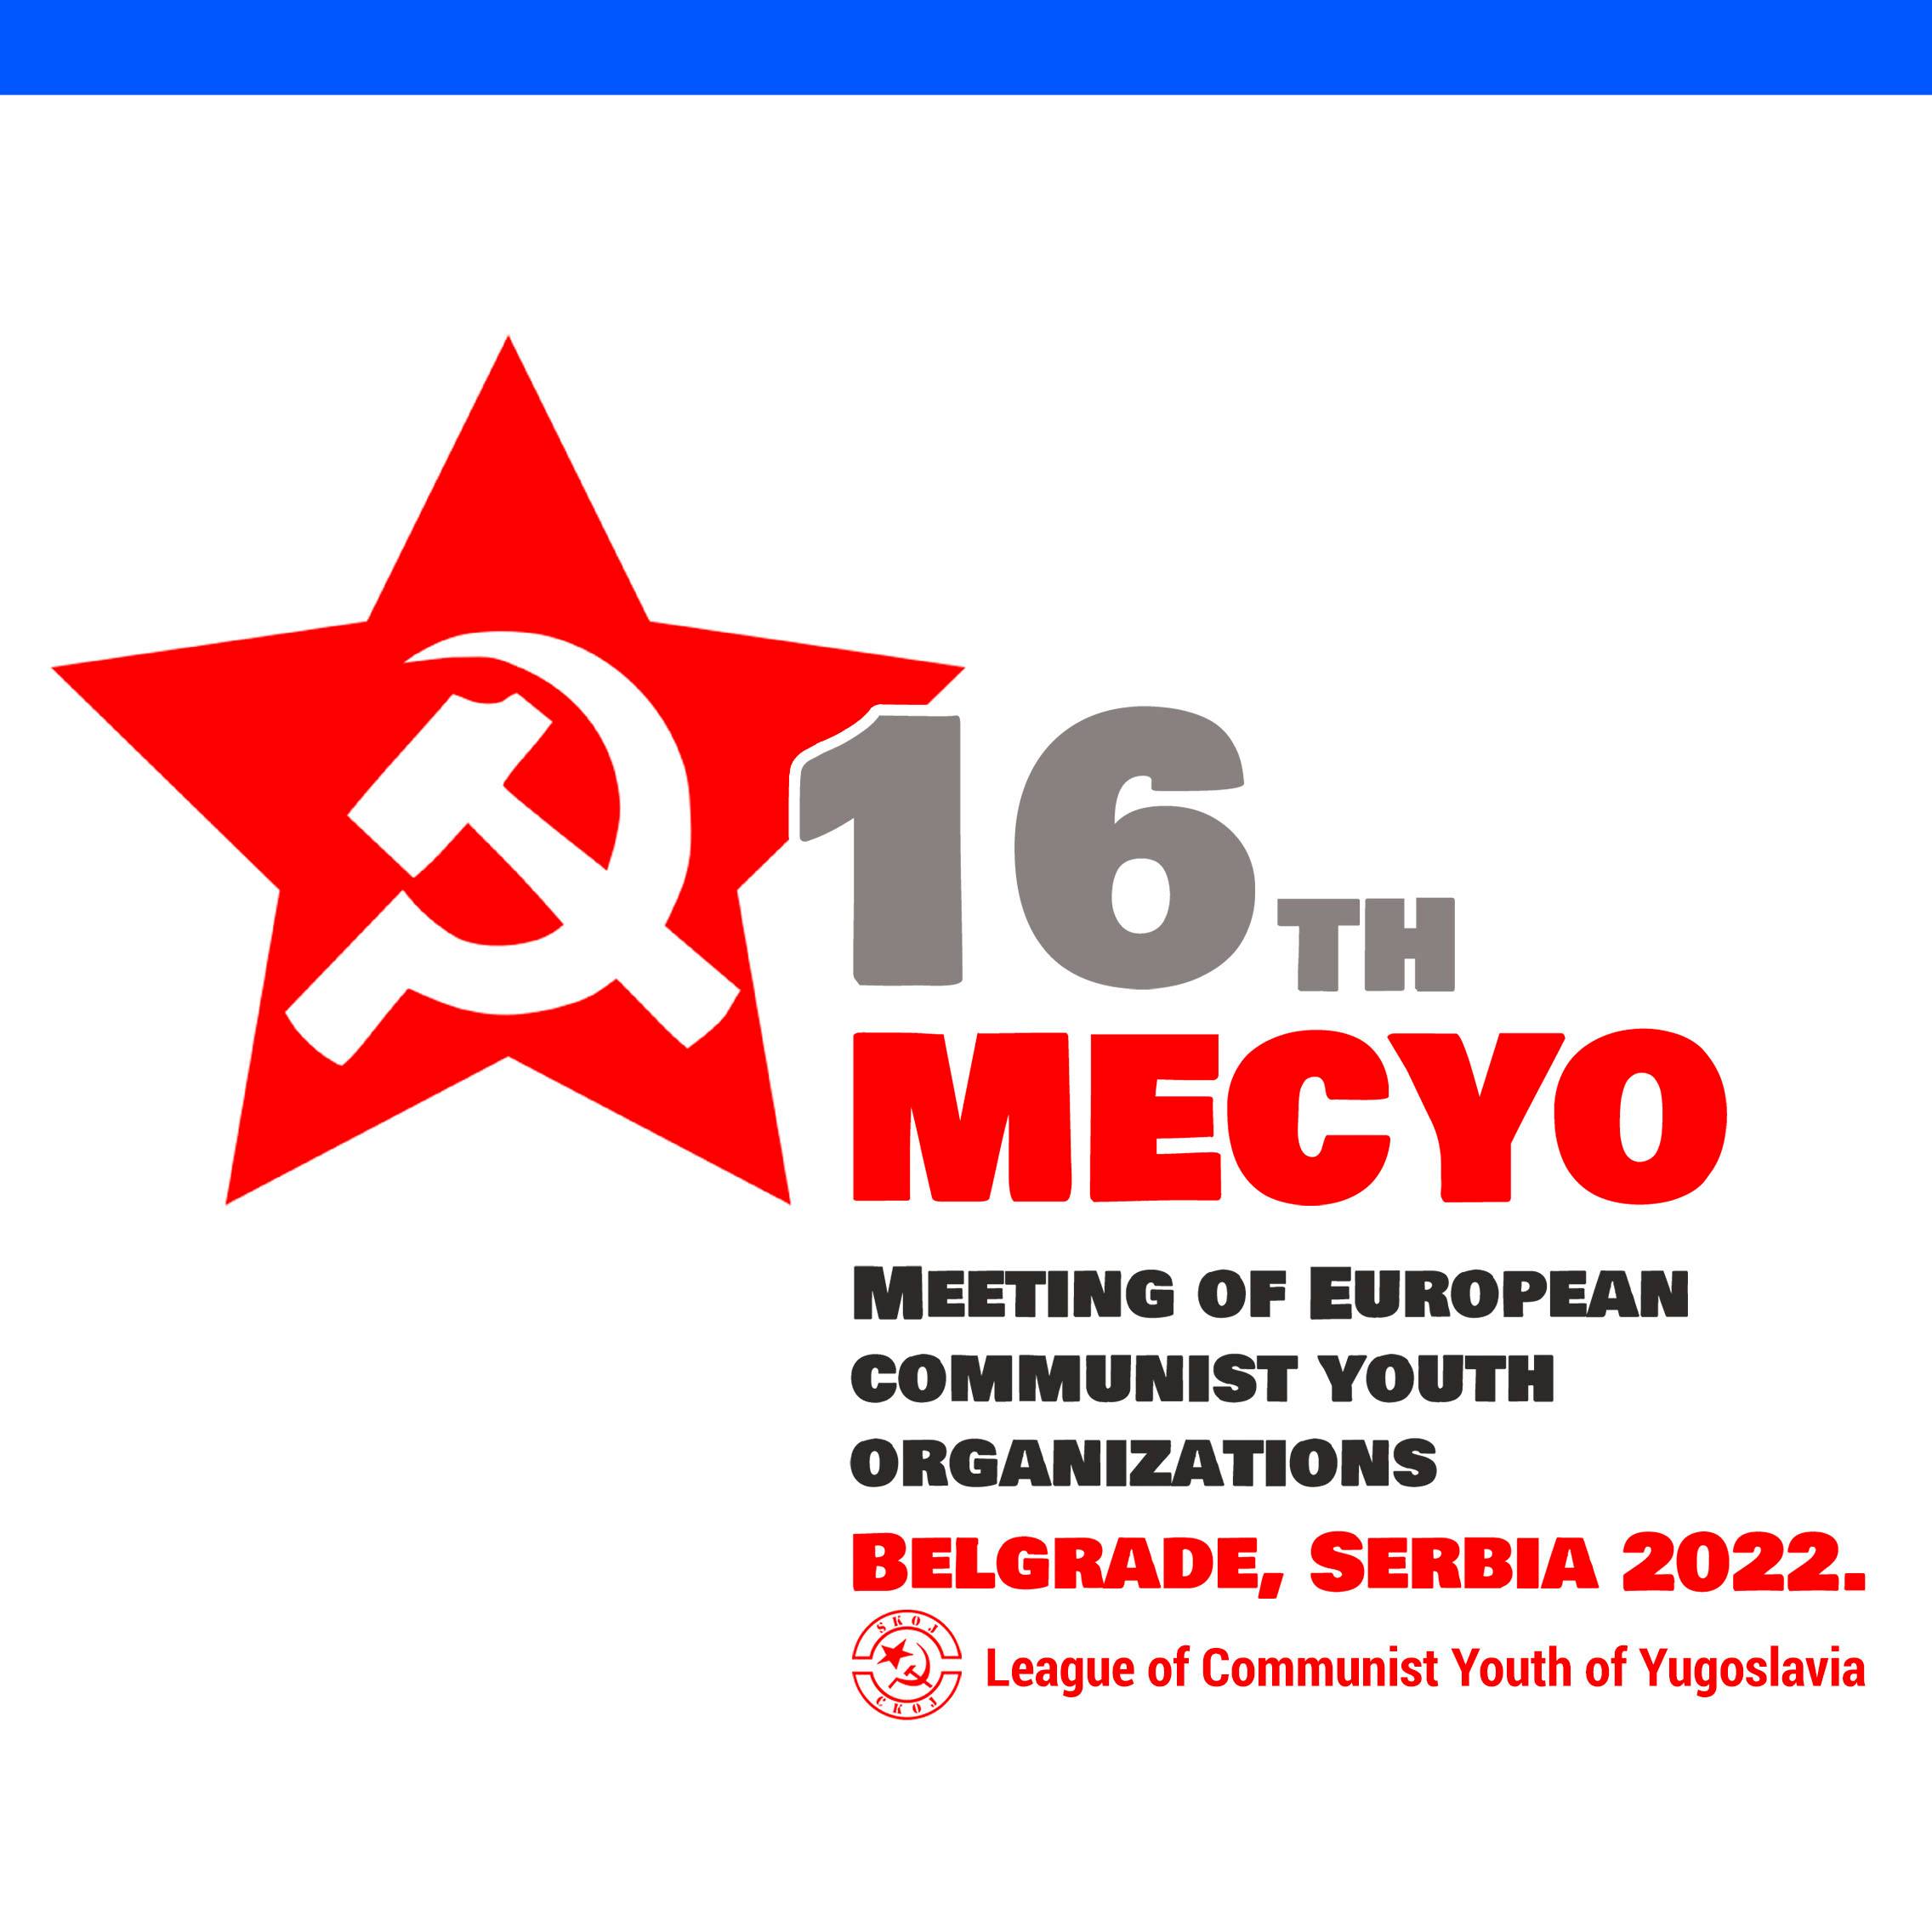 Συμμετοχή της ΕΔΟΝ στη 16η Συνάντηση Ευρωπαϊκών Κομμουνιστικών Οργανώσεων Νεολαίας